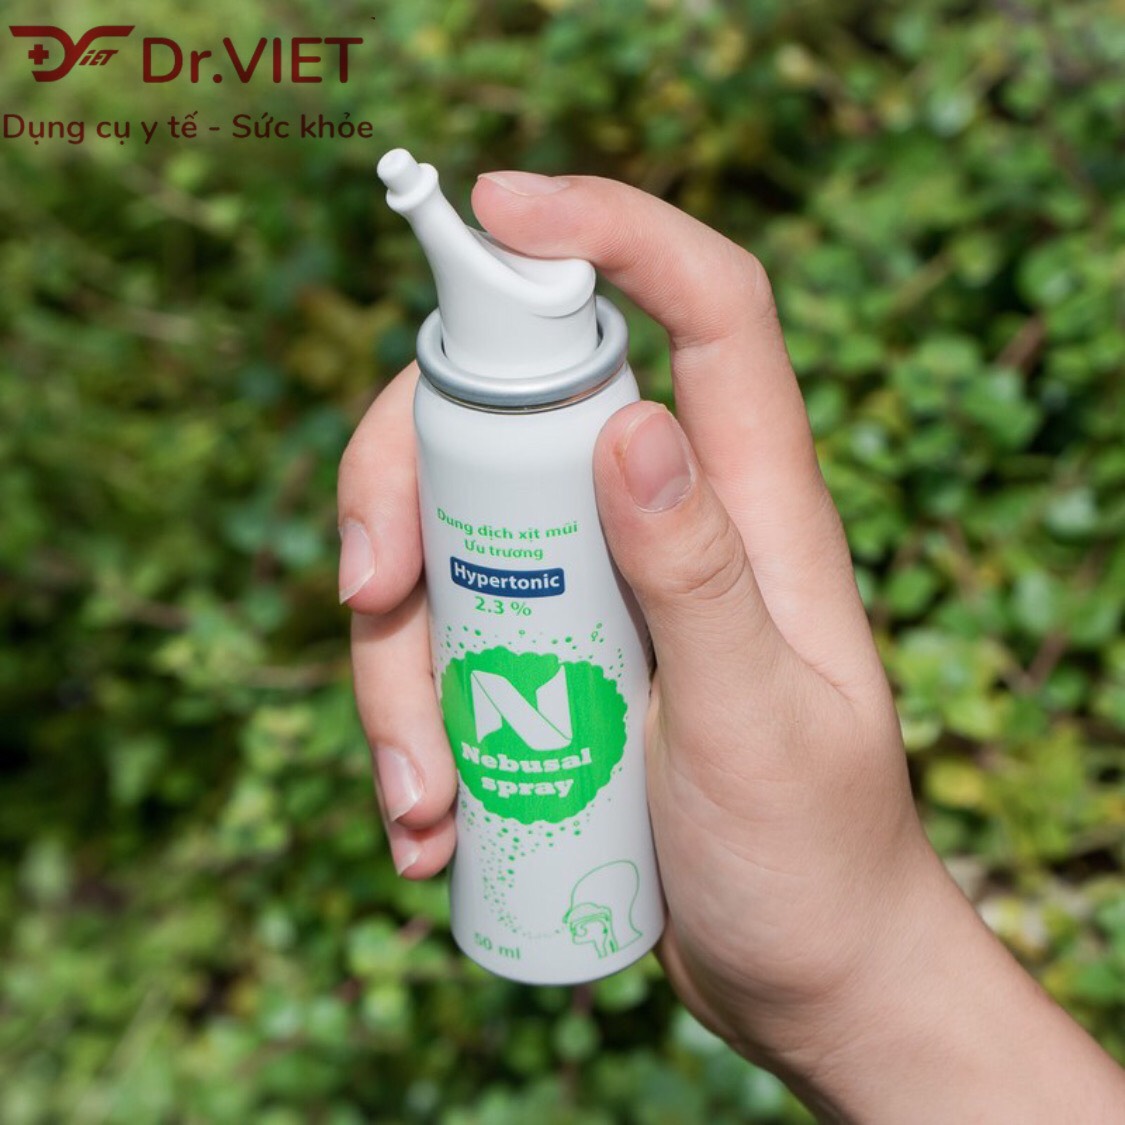 Dung dịch xịt mũi ưu trương – Nebusal Srpay 2,3% Chính hãng - Thích hợp cho người lớn và trẻ em trên 3 tuổi, giảm nghẹt và vệ sinh mũi